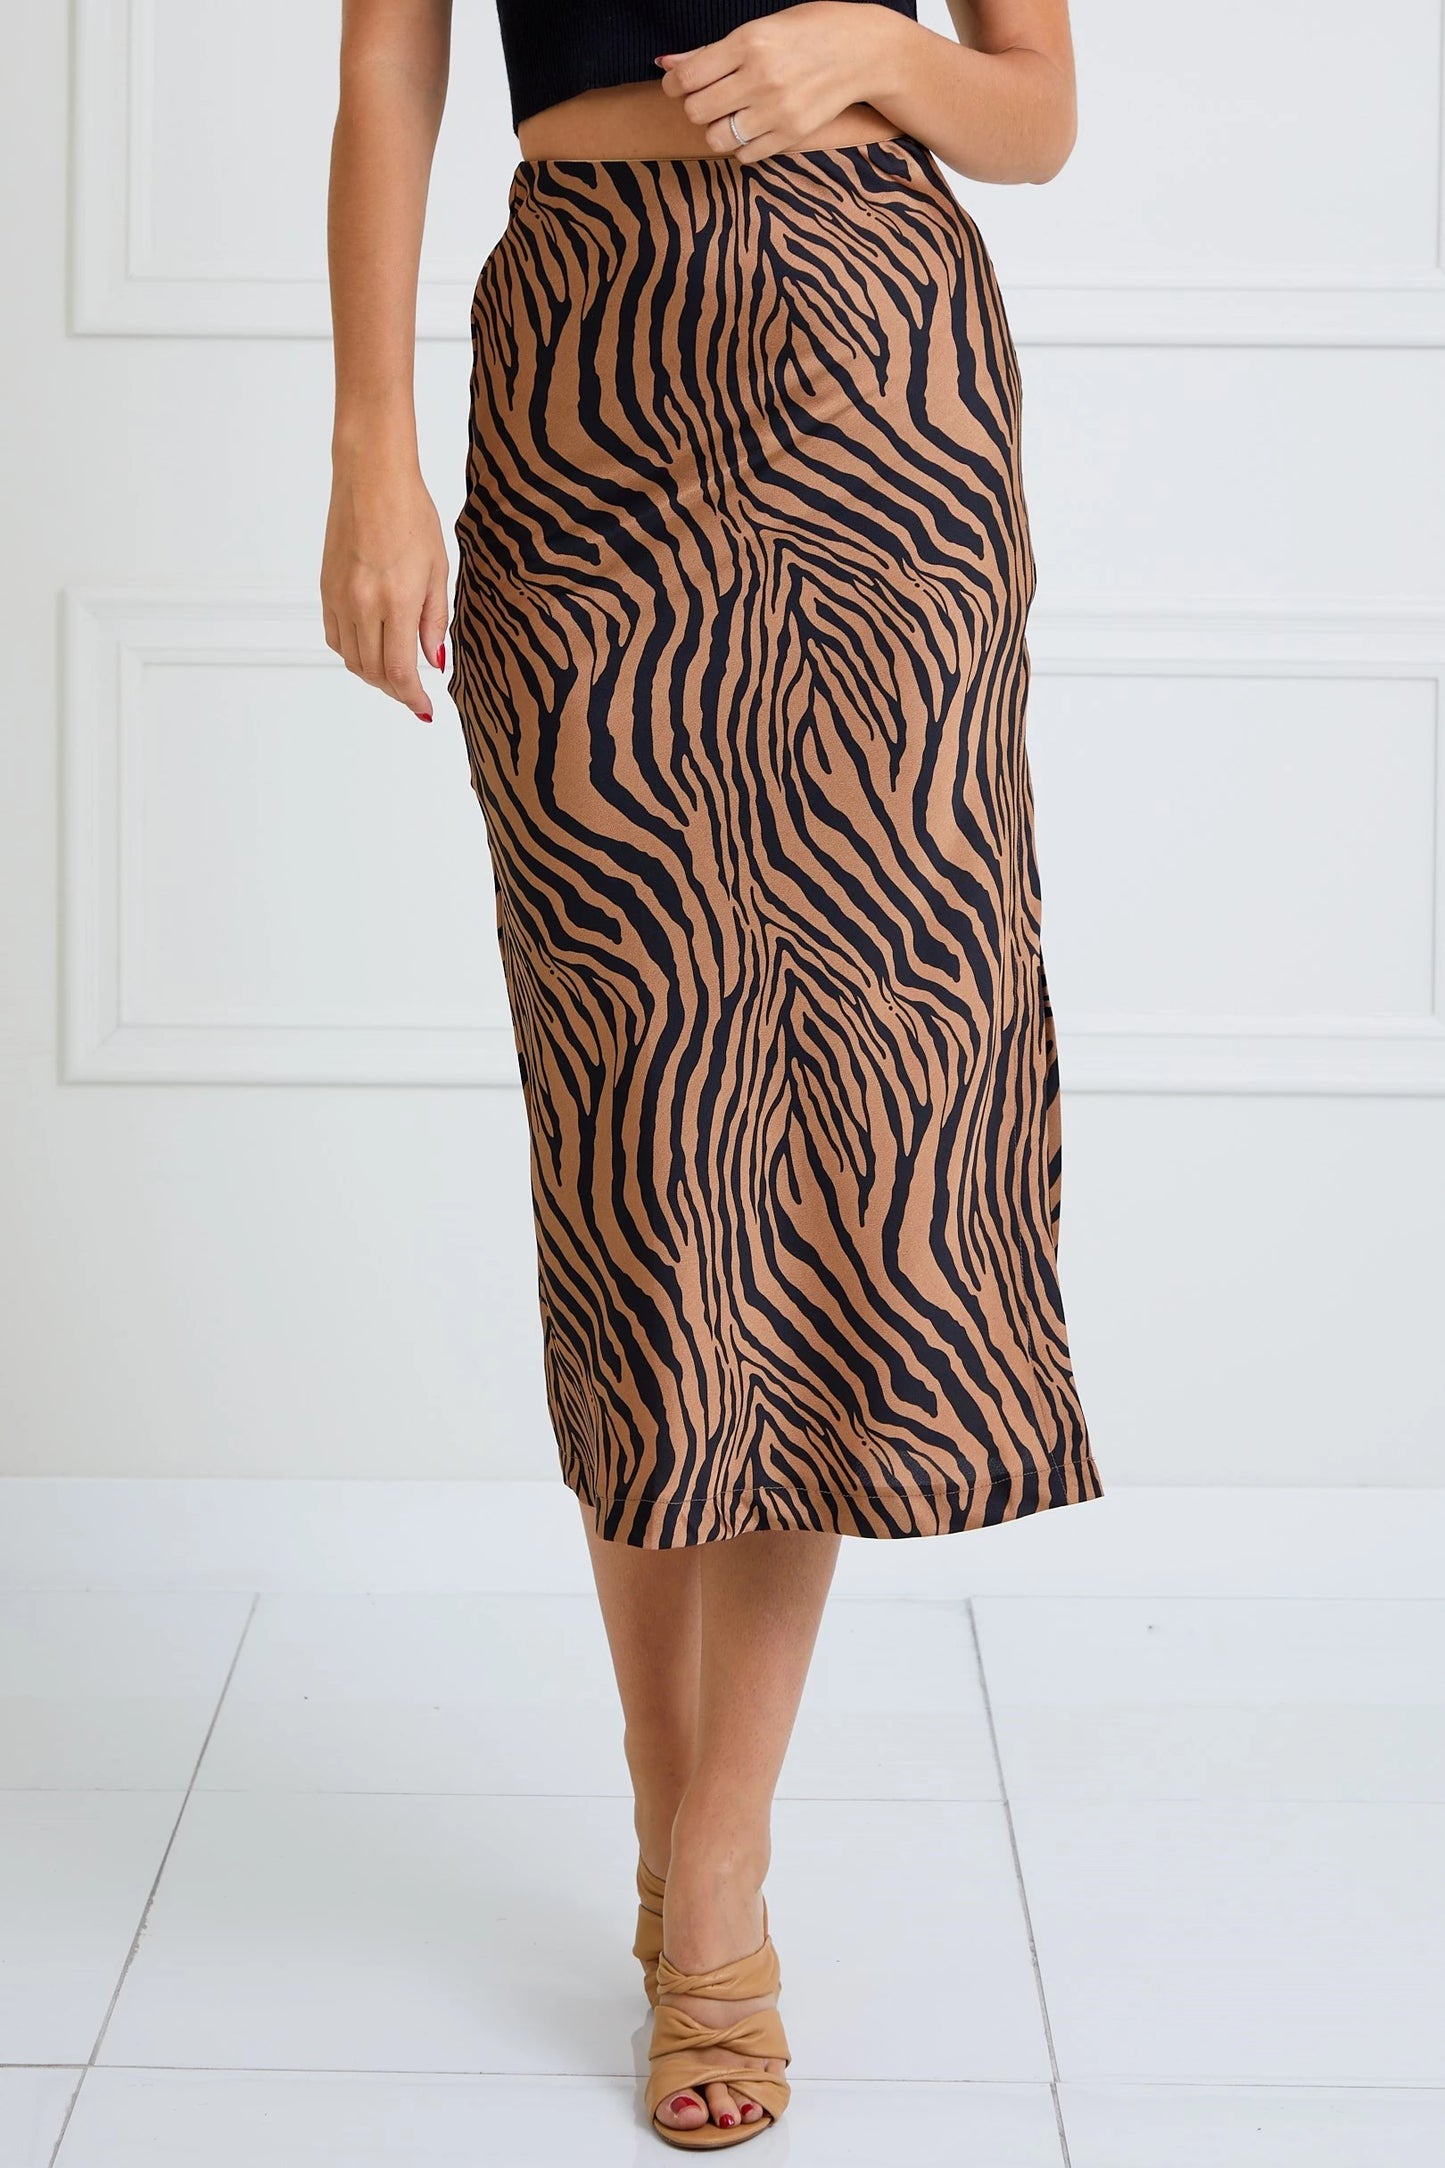 Statement Maker Zebra Satin High Waist Midi Skirt